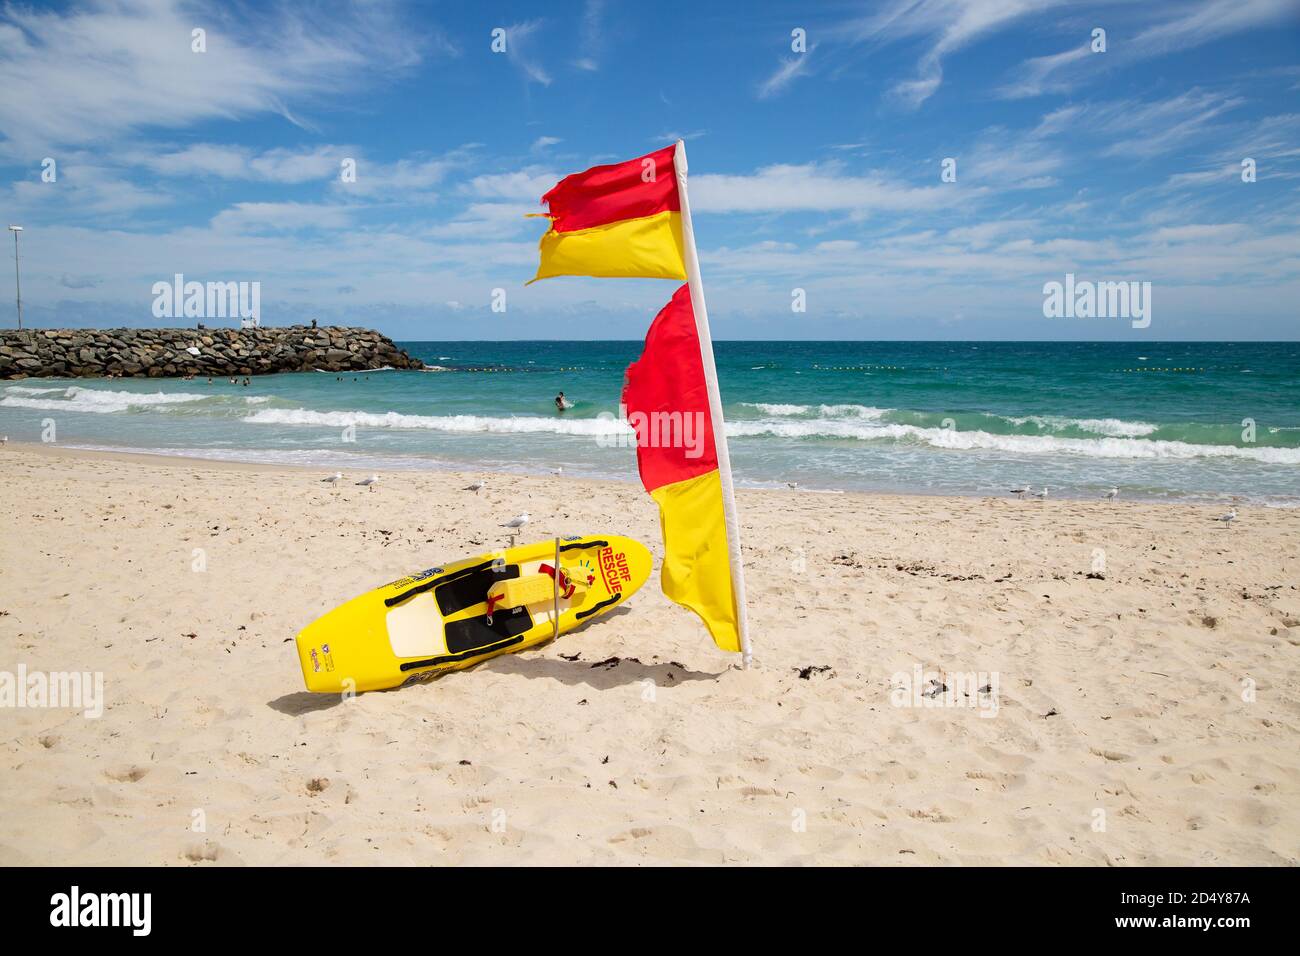 Perth, Australien - 7. Oktober 2020: Surf Rettungsschwimmer Flagge und Board am Strand von Cottesloe mit dem Meer im Hintergrund Stockfoto